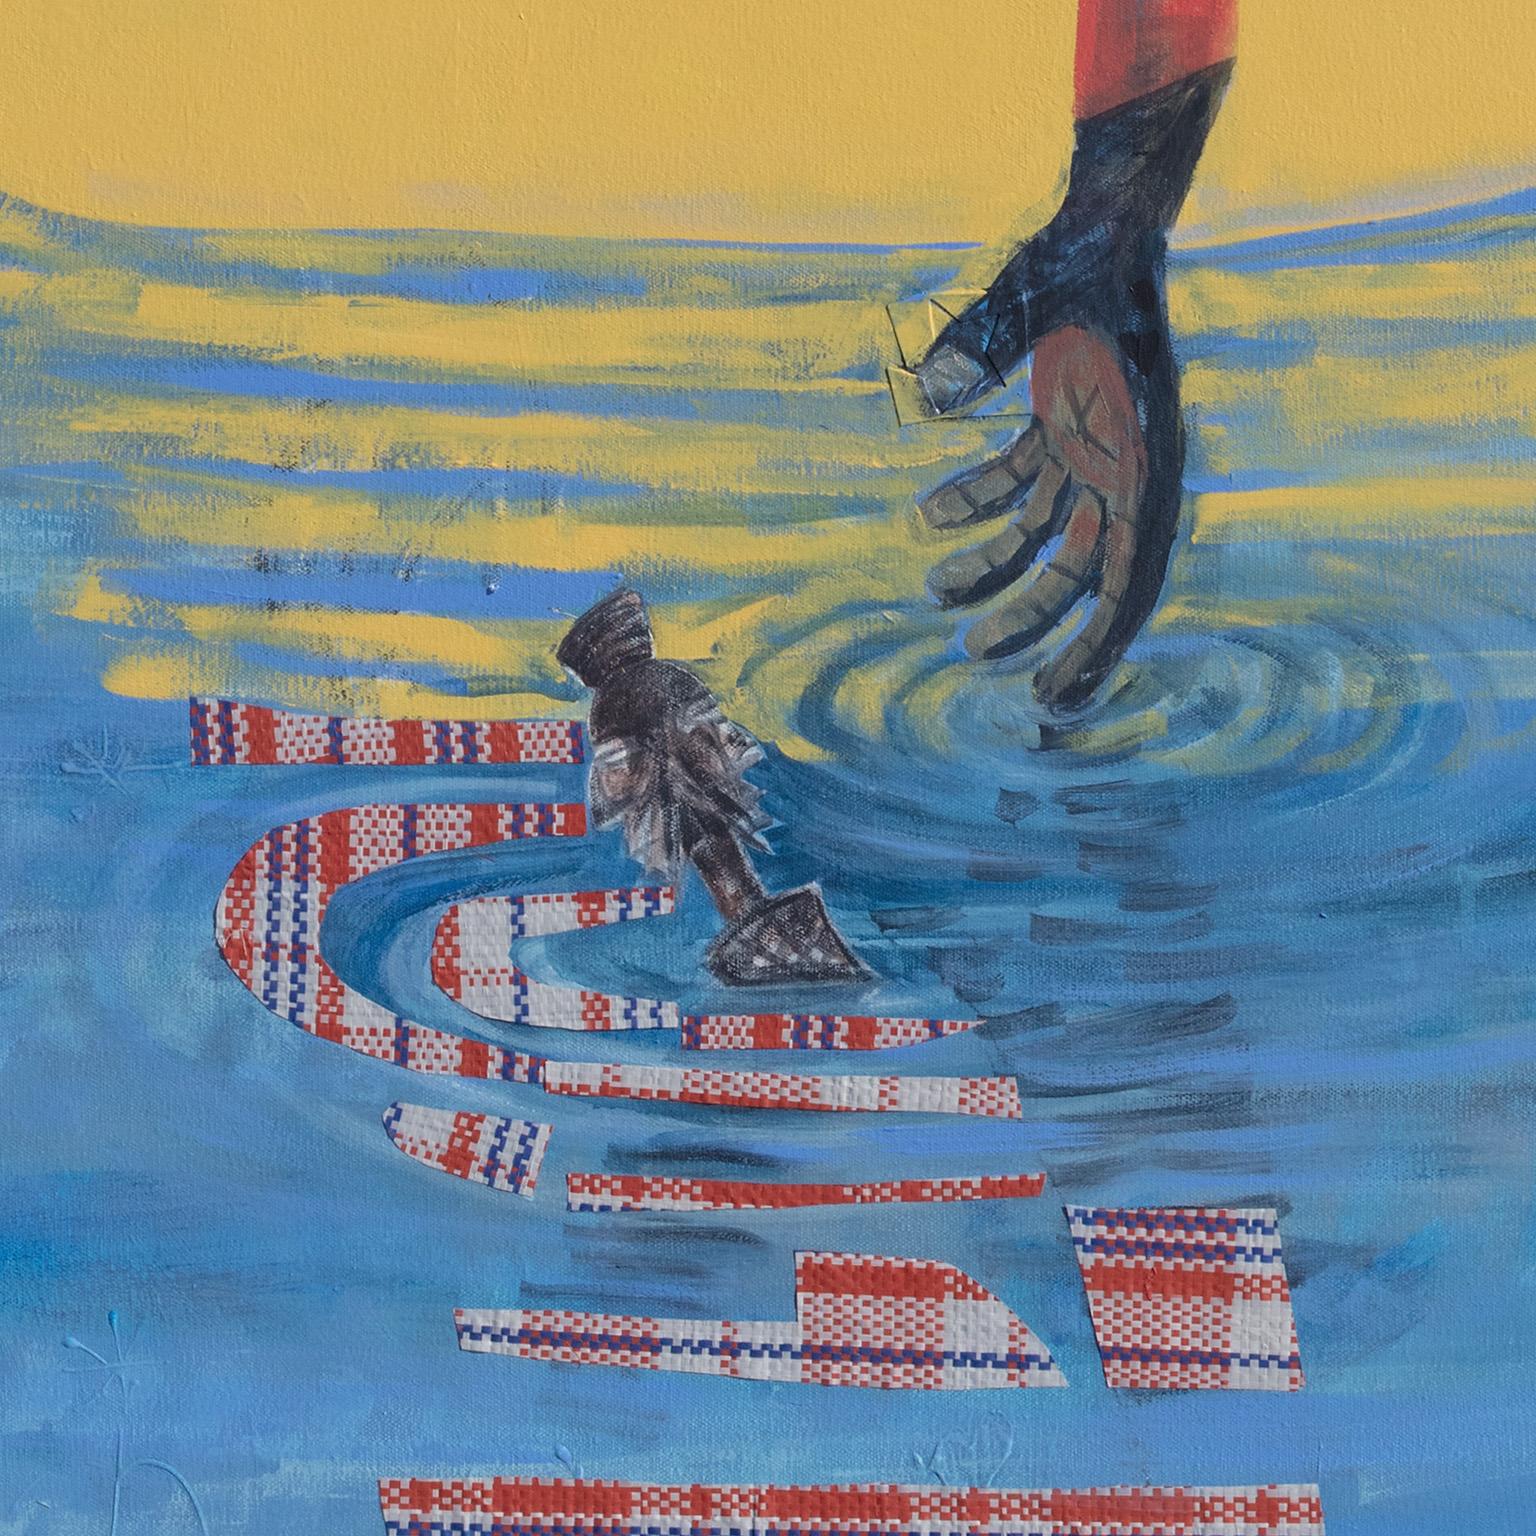 Spring Break Morning #2 de Francks Deceus est une œuvre de 60 x 48 pouces réalisée à l'acrylique et au collage sur toile. Les couleurs principales sont le rouge, le jaune et le bleu. L'image est très ludique, avec un personnage en costume rouge